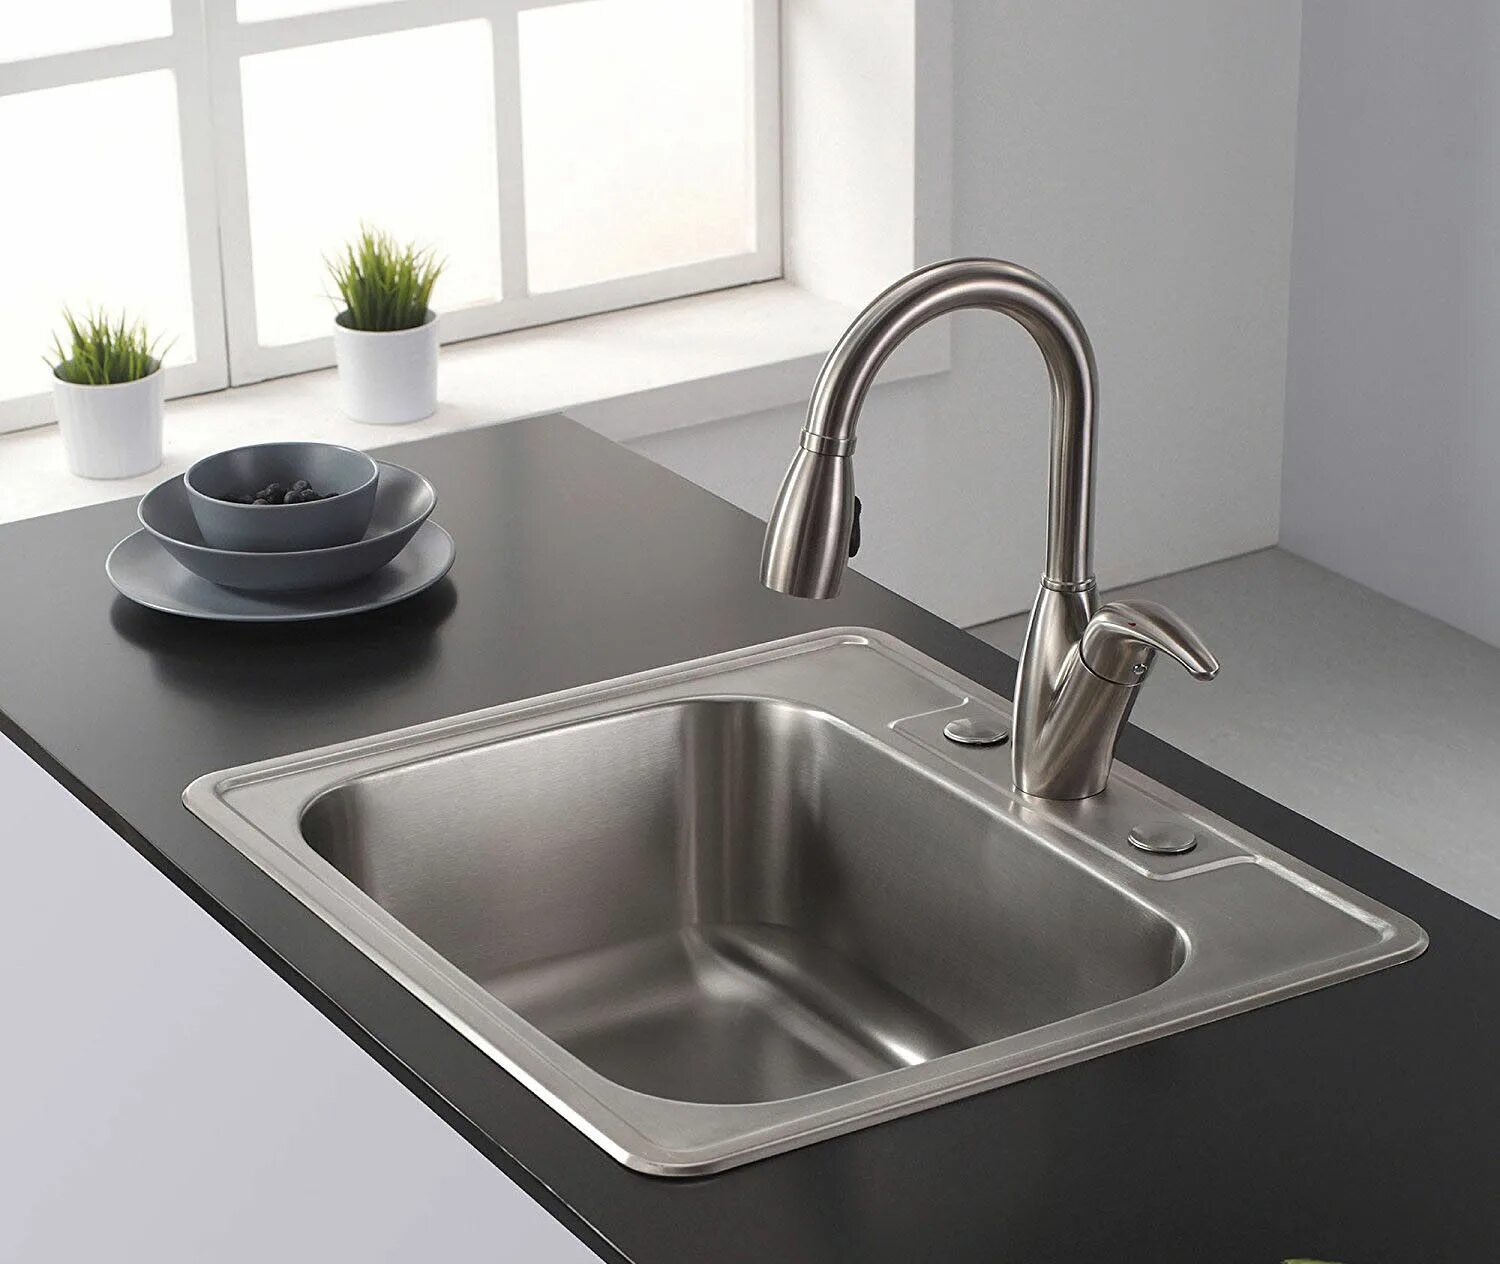 Кухонная мебель мойка. Раковина Kitchen Sink кухонная. Мойка Blanco Lantos XL 6s-if Compact. Мойка Villeroy&Boch Single-Bowl Sink. Мойка квадратная для кухни.